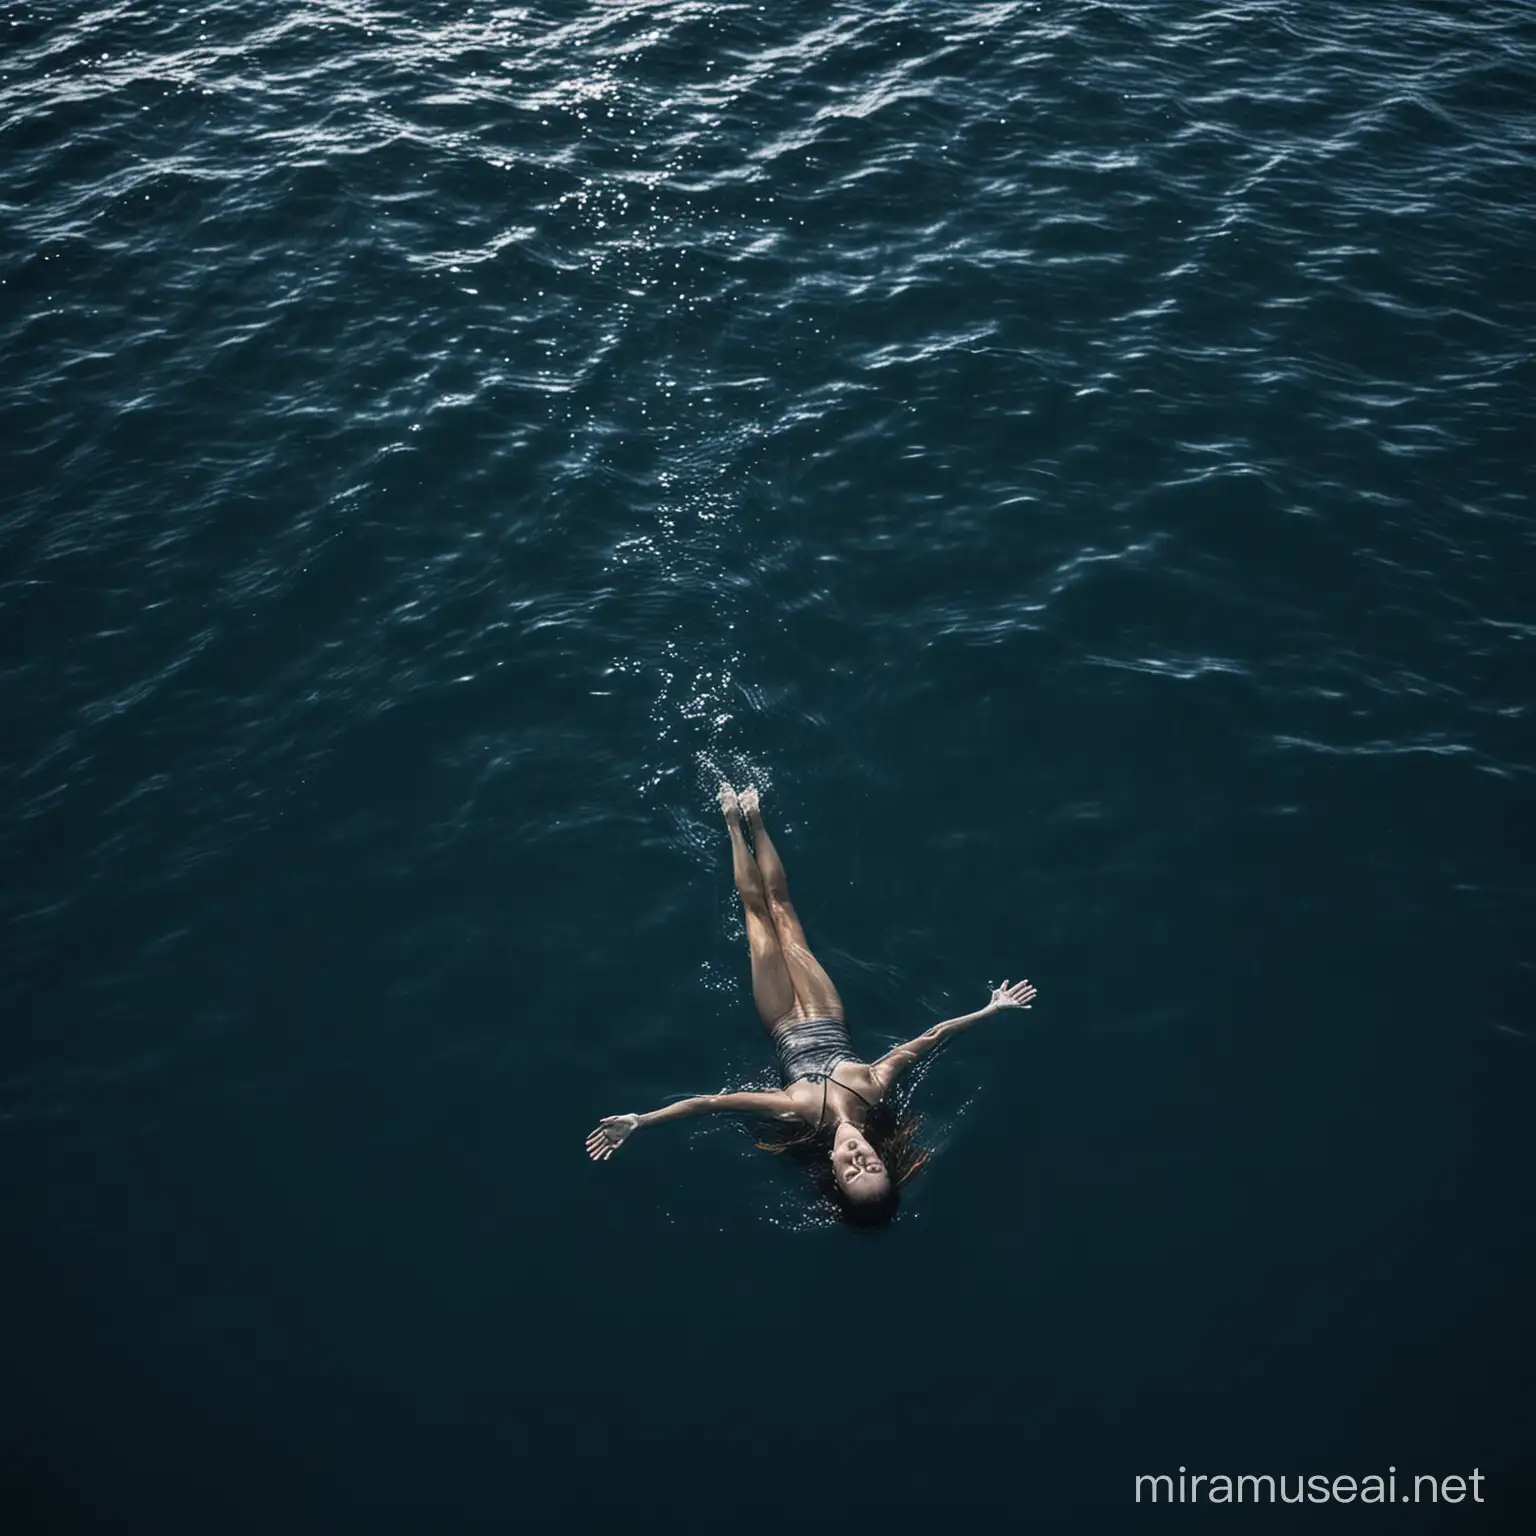 a woman floating in the open, dark blue ocean